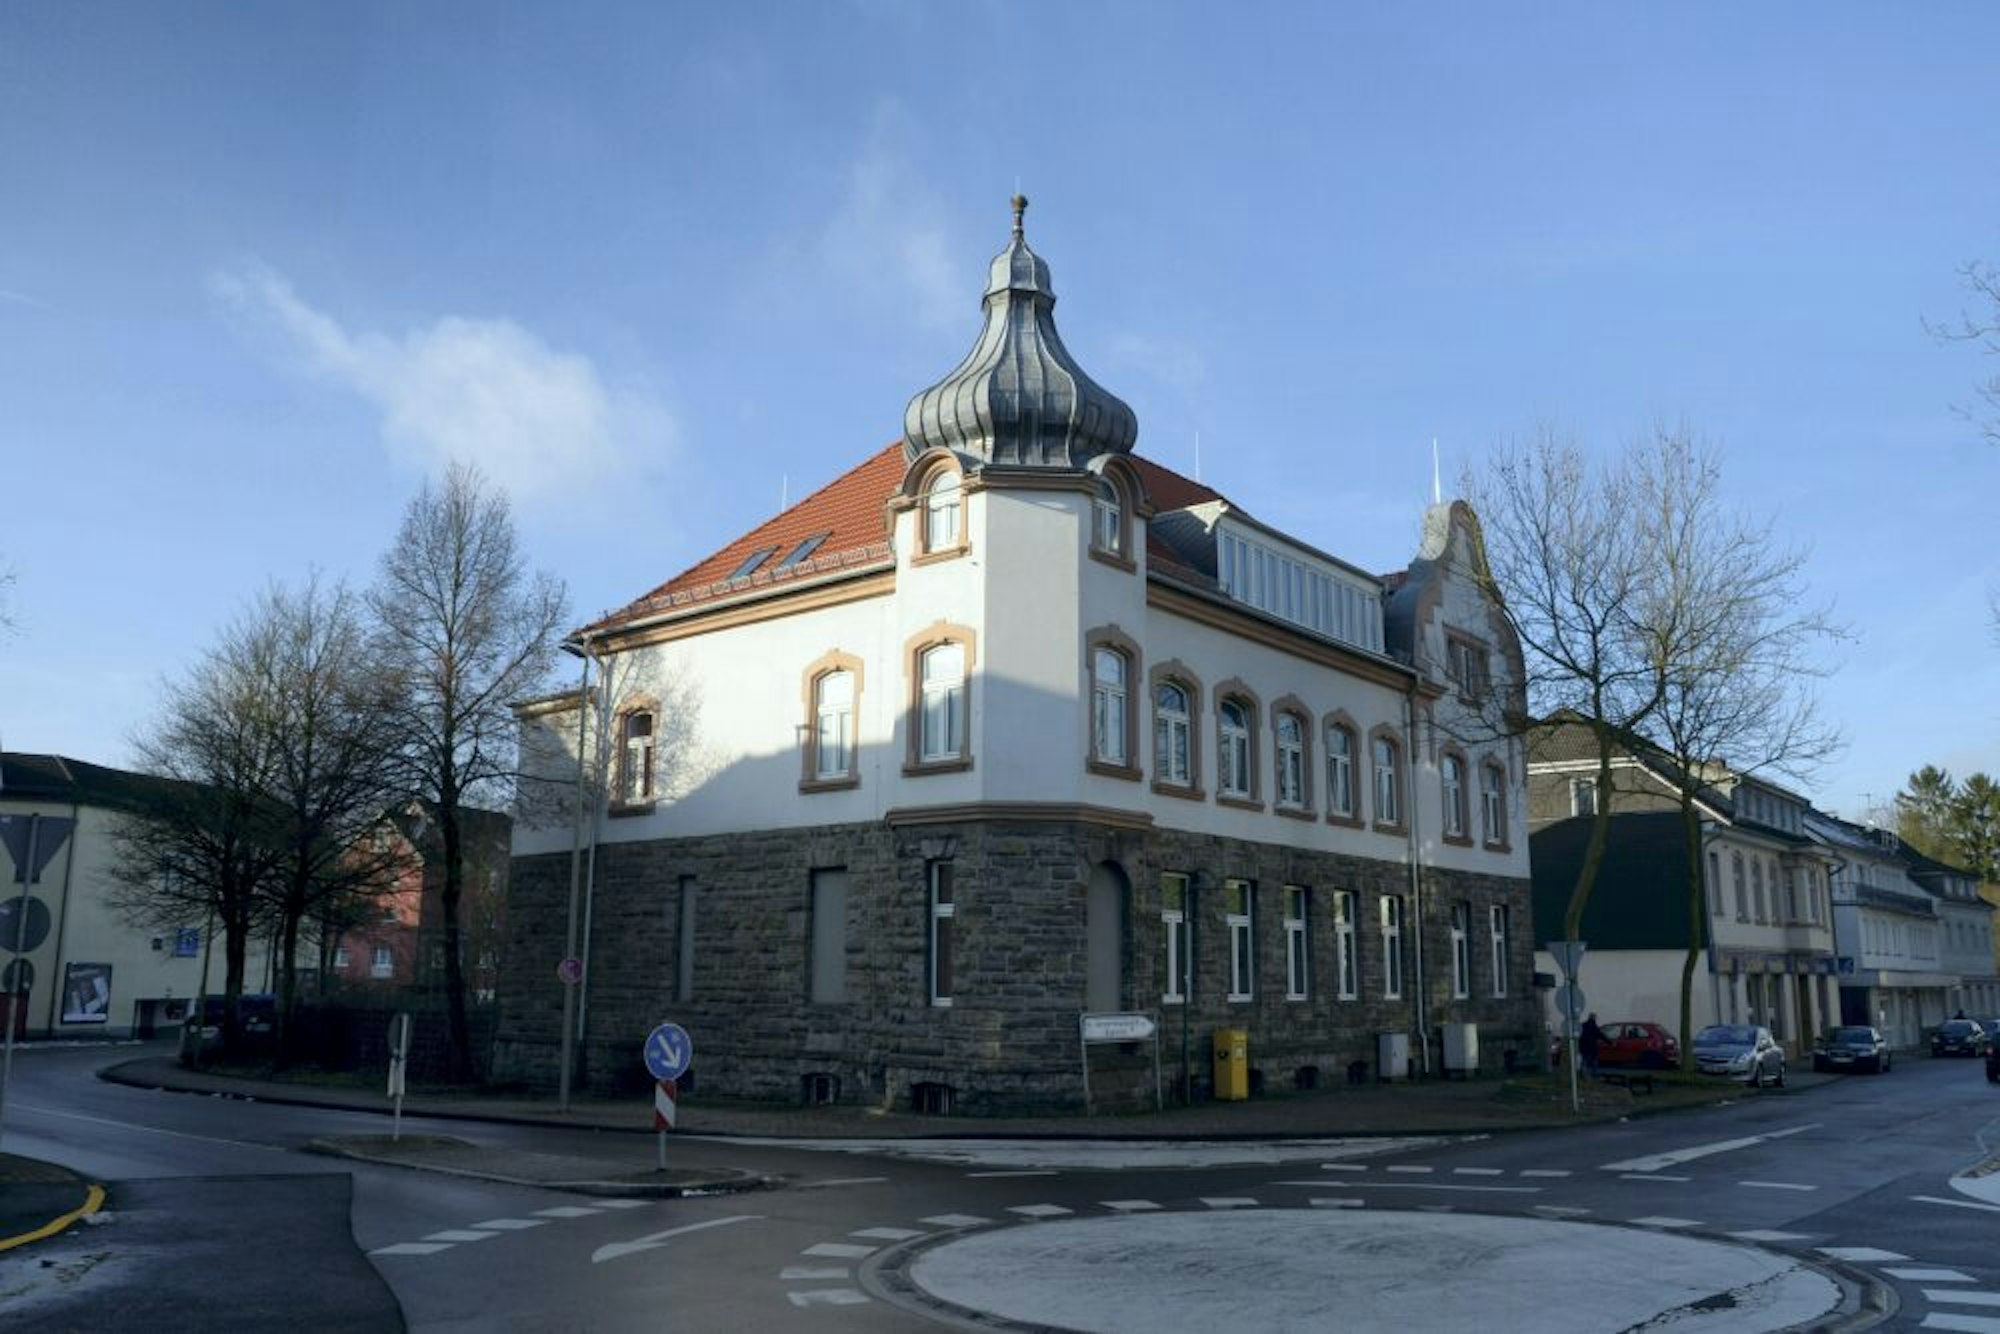 Die Alte Post an der Bahnstraße wird derzeit als Übergangswohnheim genutzt. Nun soll auch geprüft werden, ob die Musikschule hier hin umziehen könnte.